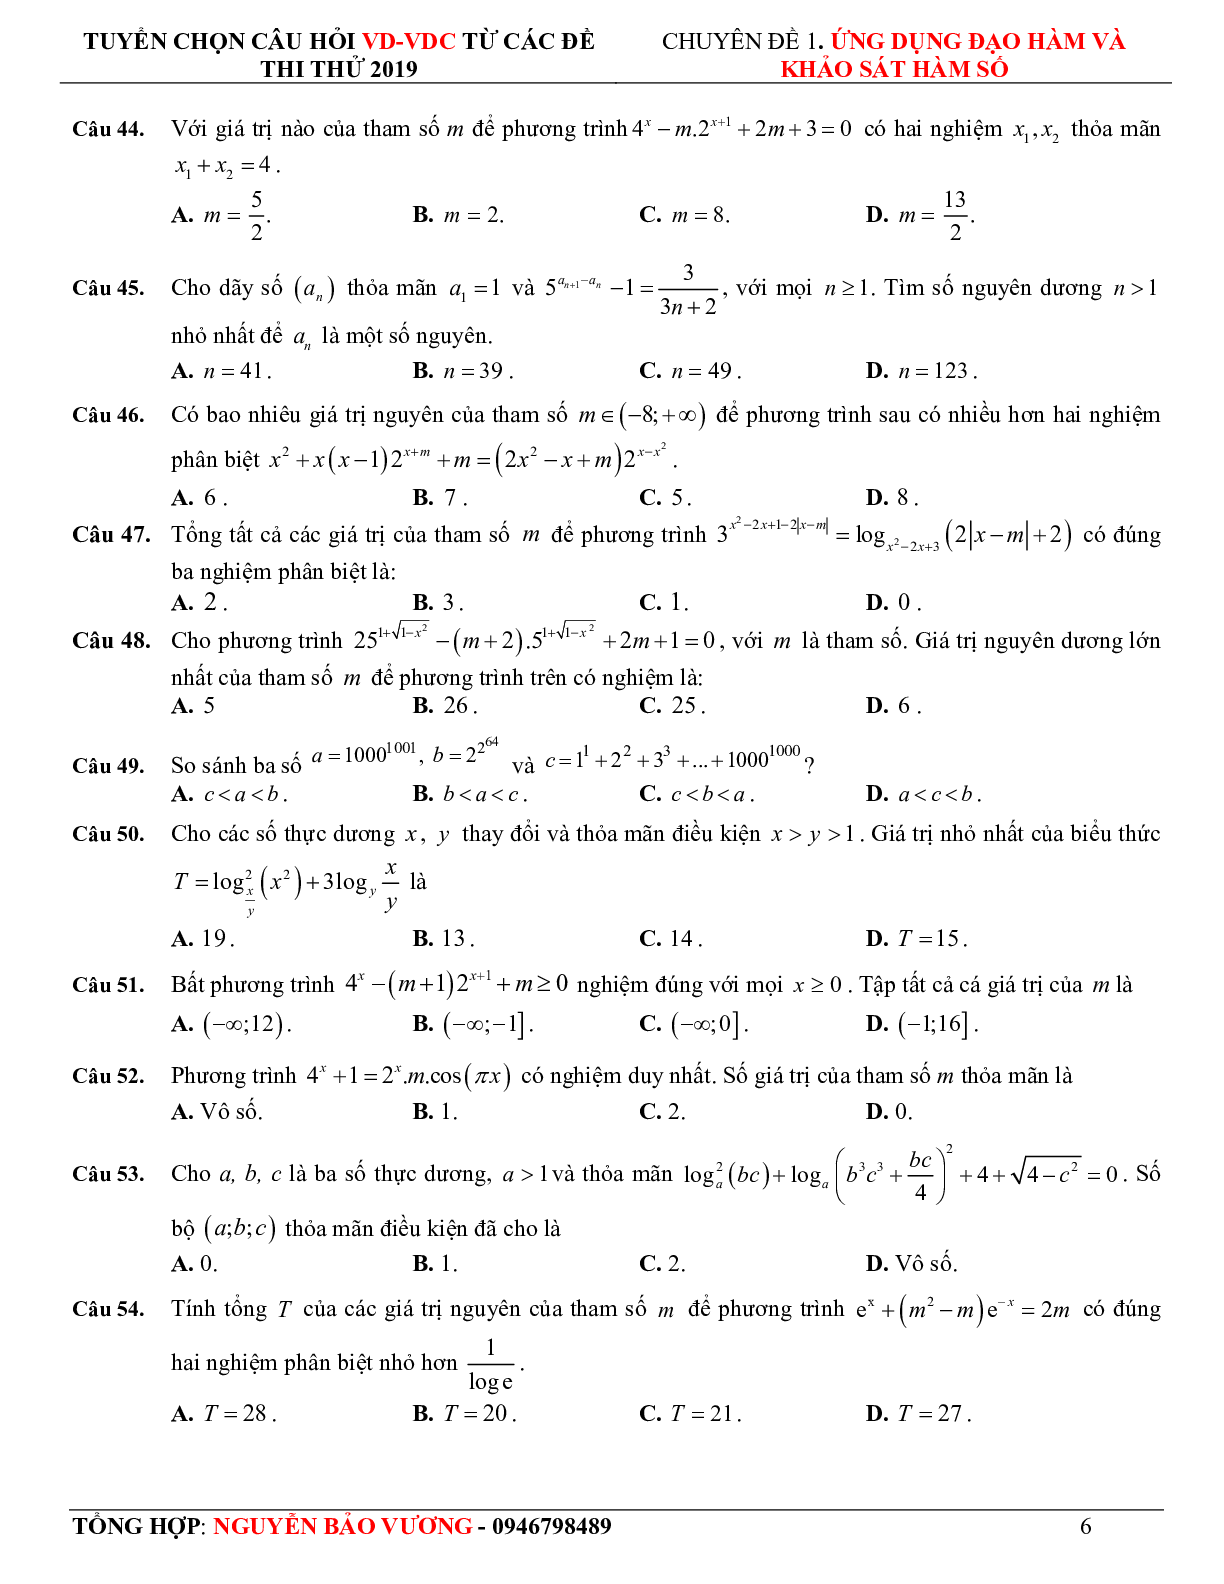 57 bài toán vận dụng - vận dụng cao hàm số mũ, logarit - có lời giải chi tiết (trang 7)